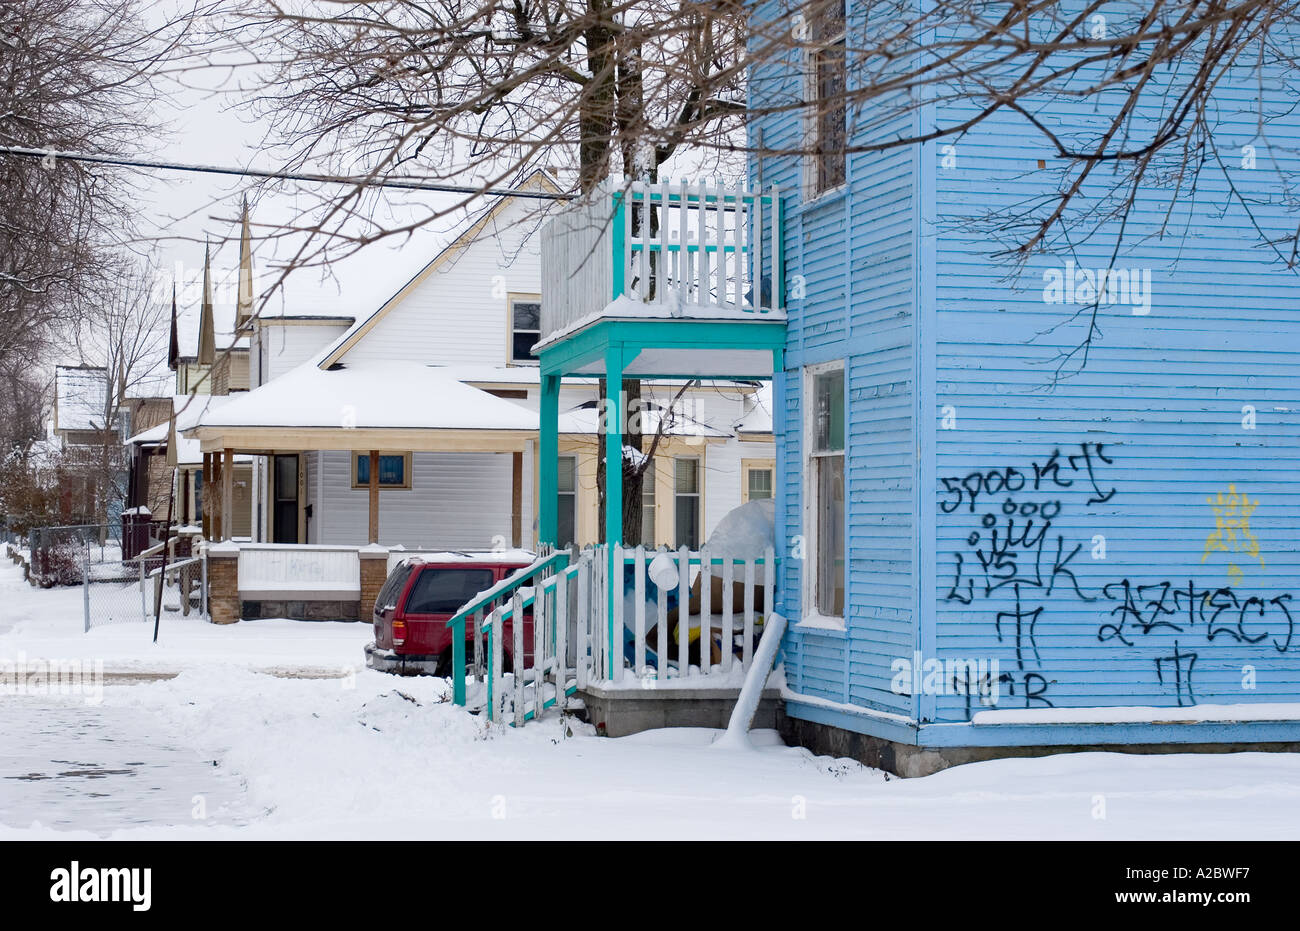 Graffiti-Bande auf ein Haus in einem einkommensschwachen Viertel von Grand Rapids Michigan Stockfoto